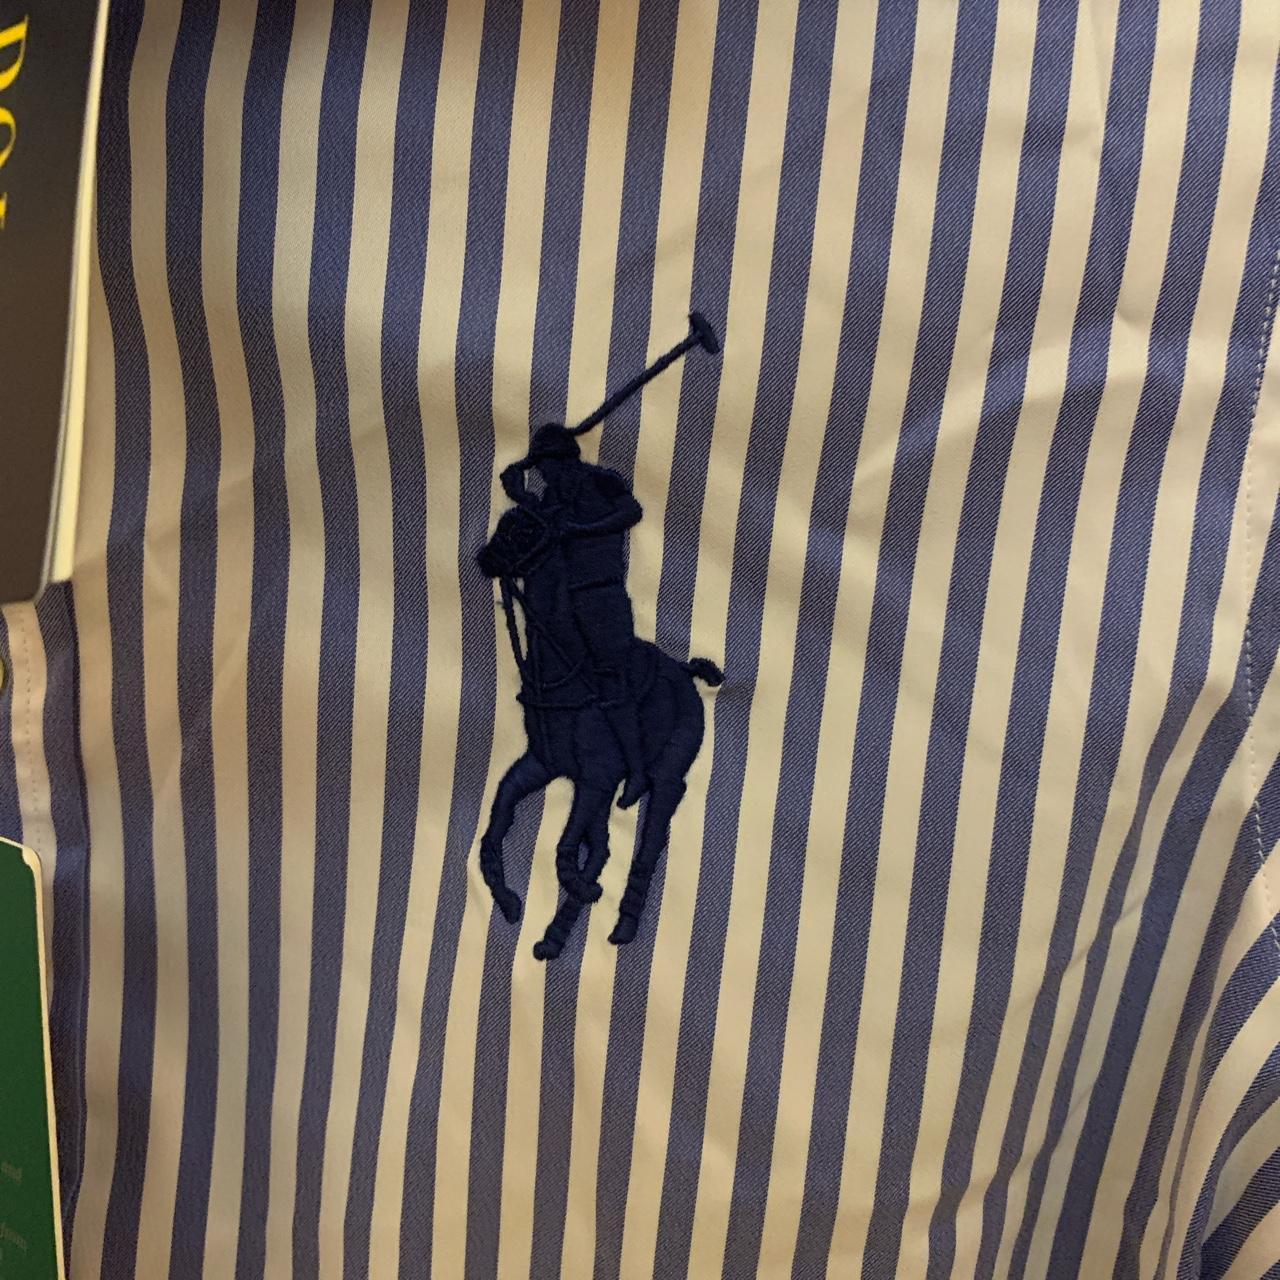 Brand new pinstripe Ralph Lauren shirt In... - Depop